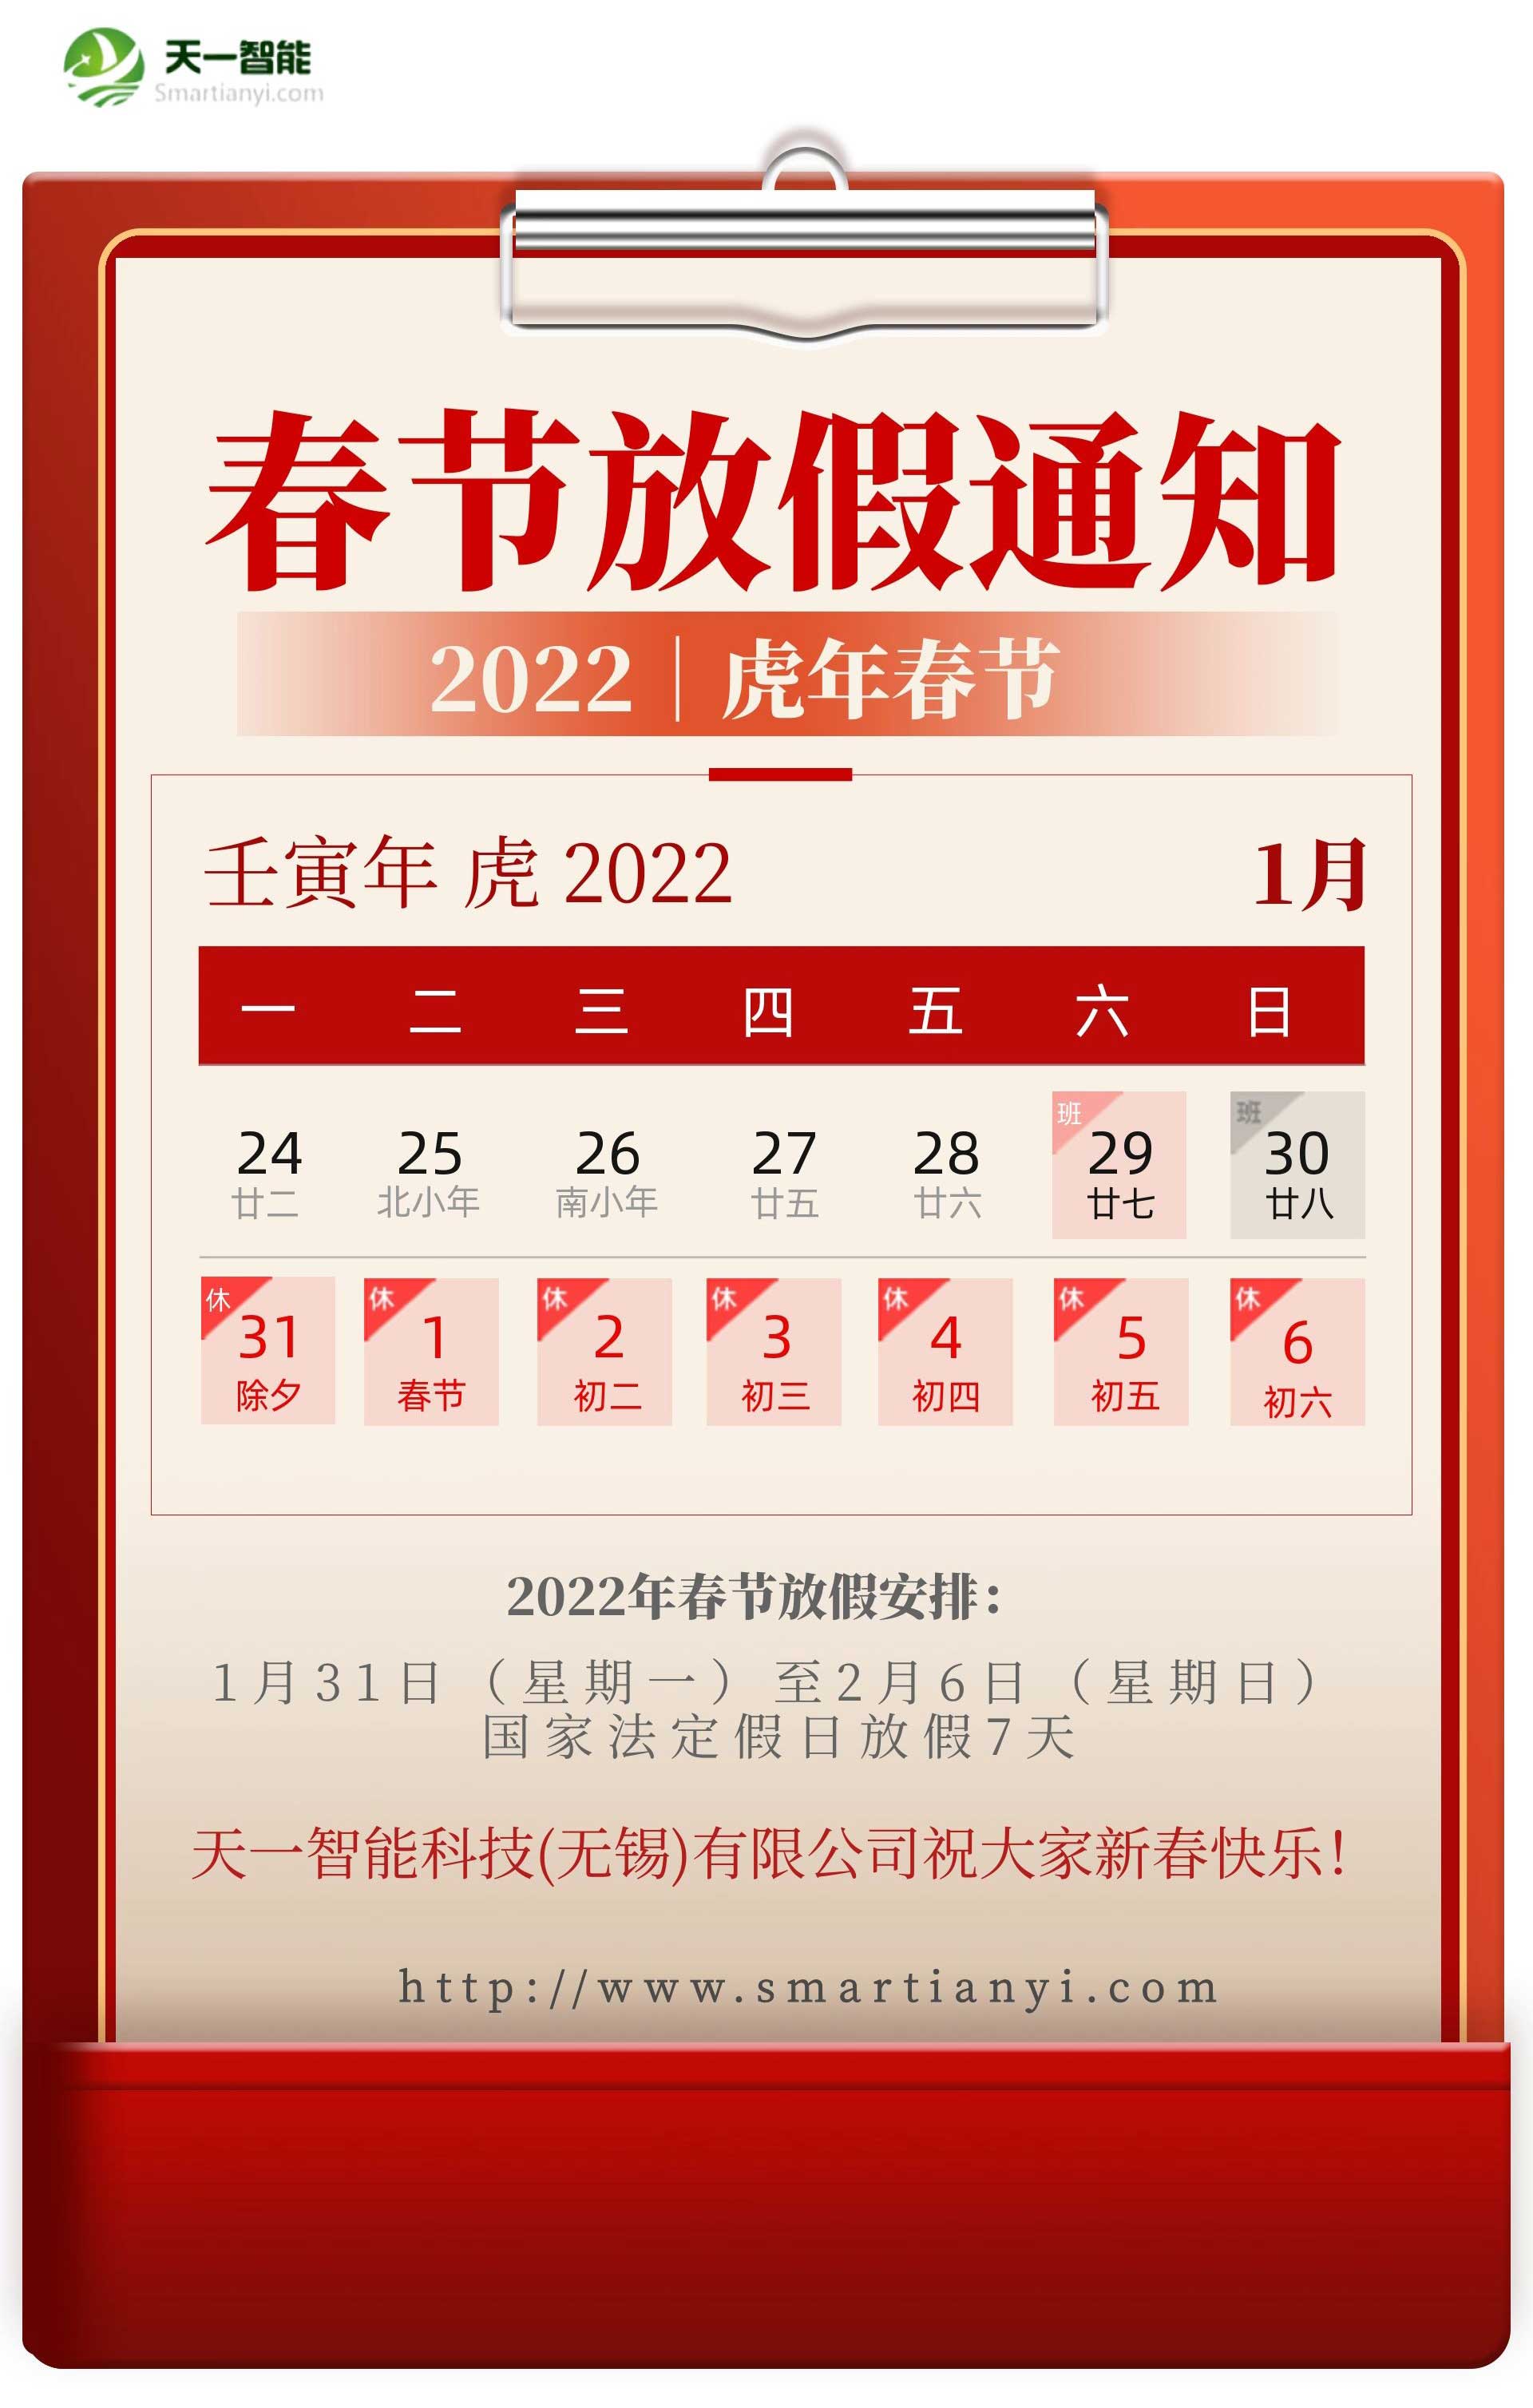 皇冠游戏网站关于2022年春节放假安排的通知